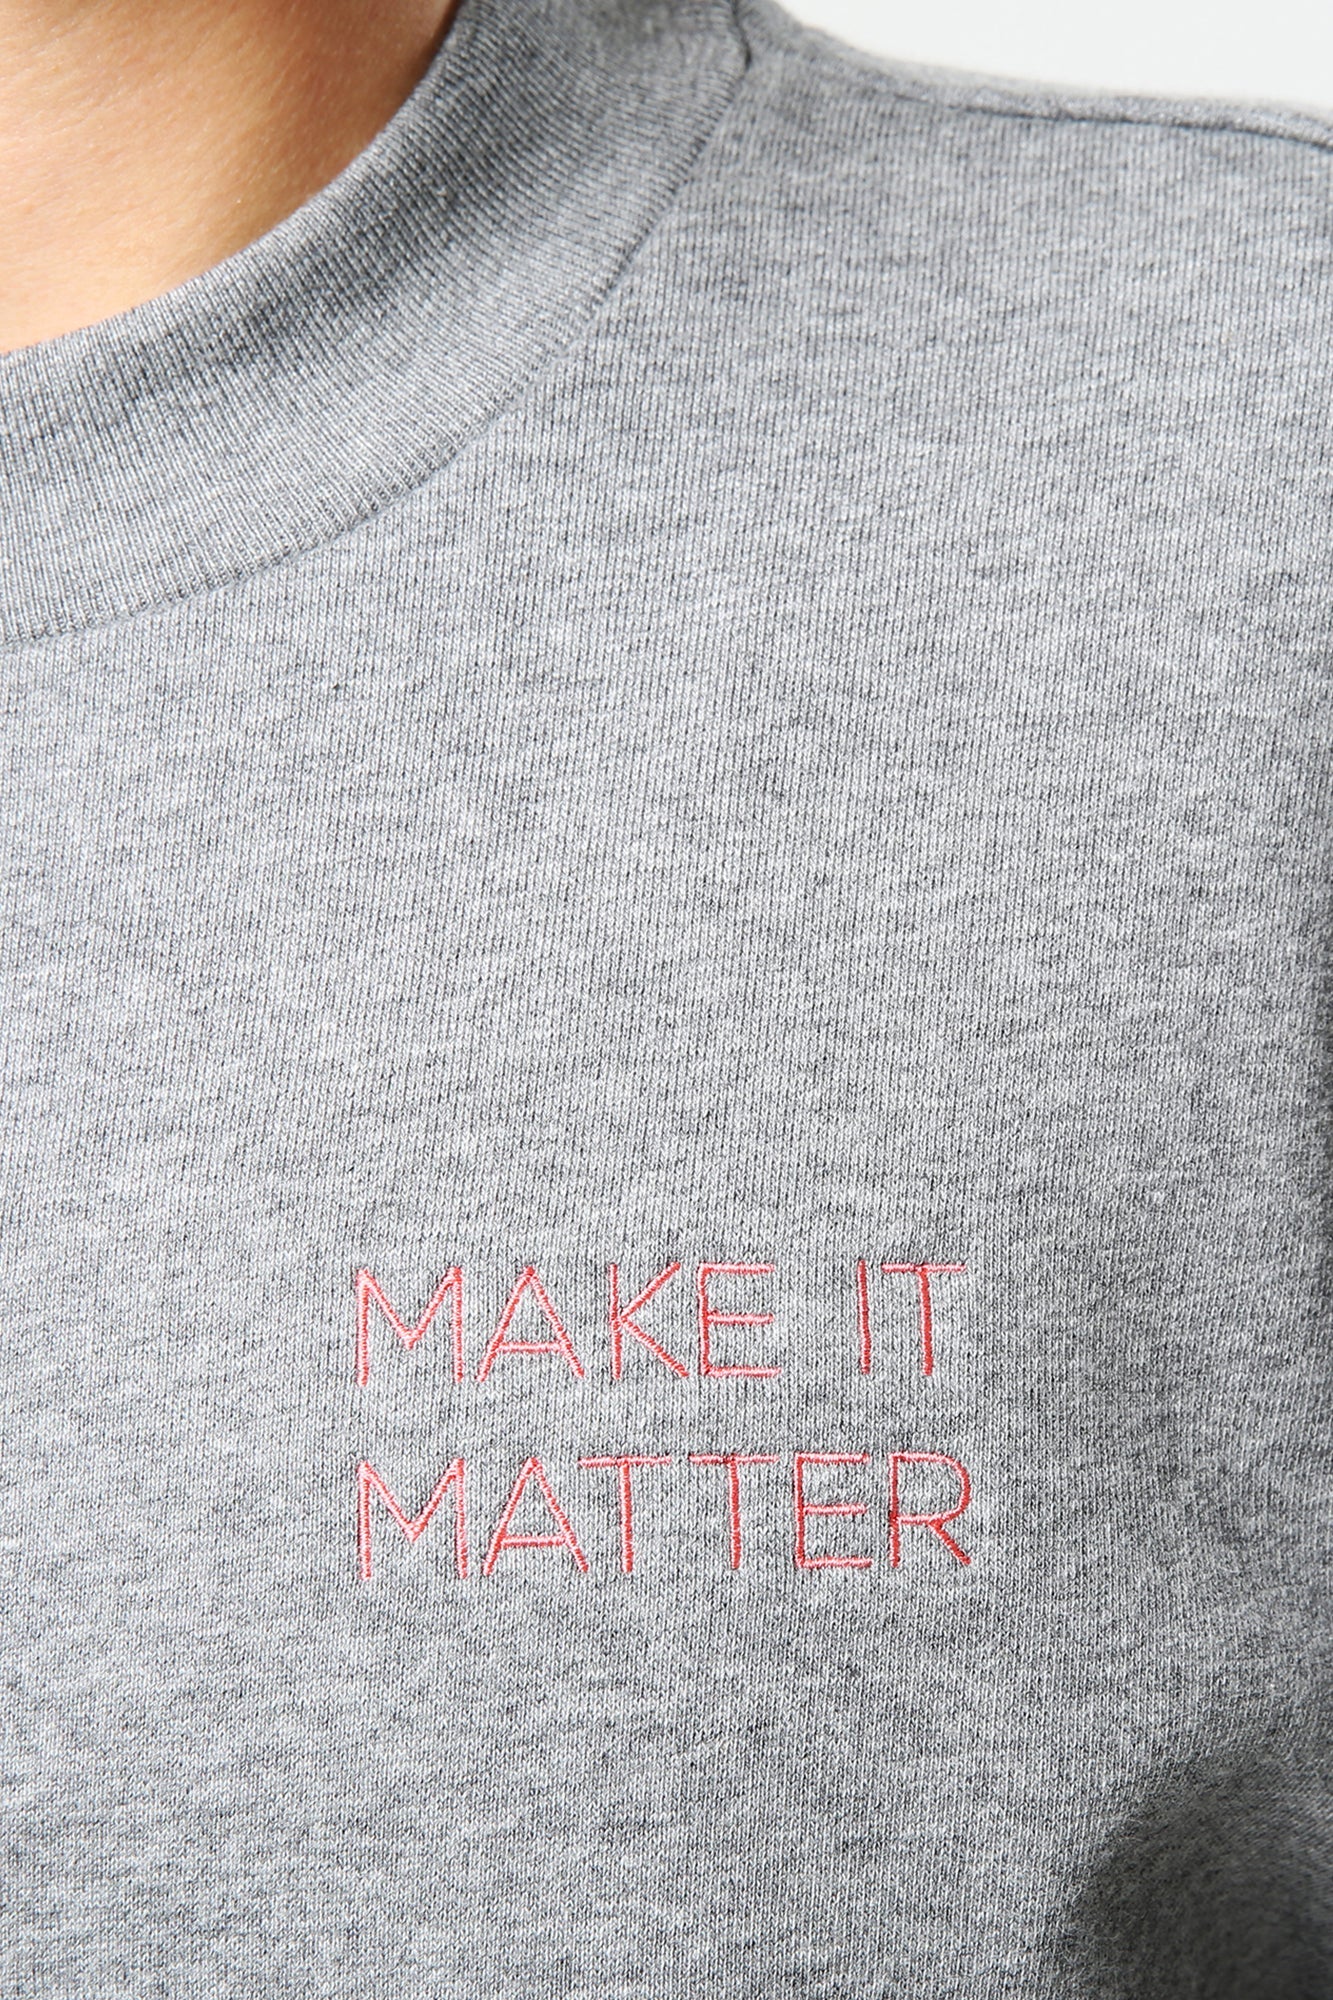 Make It Matter Sweater Grau